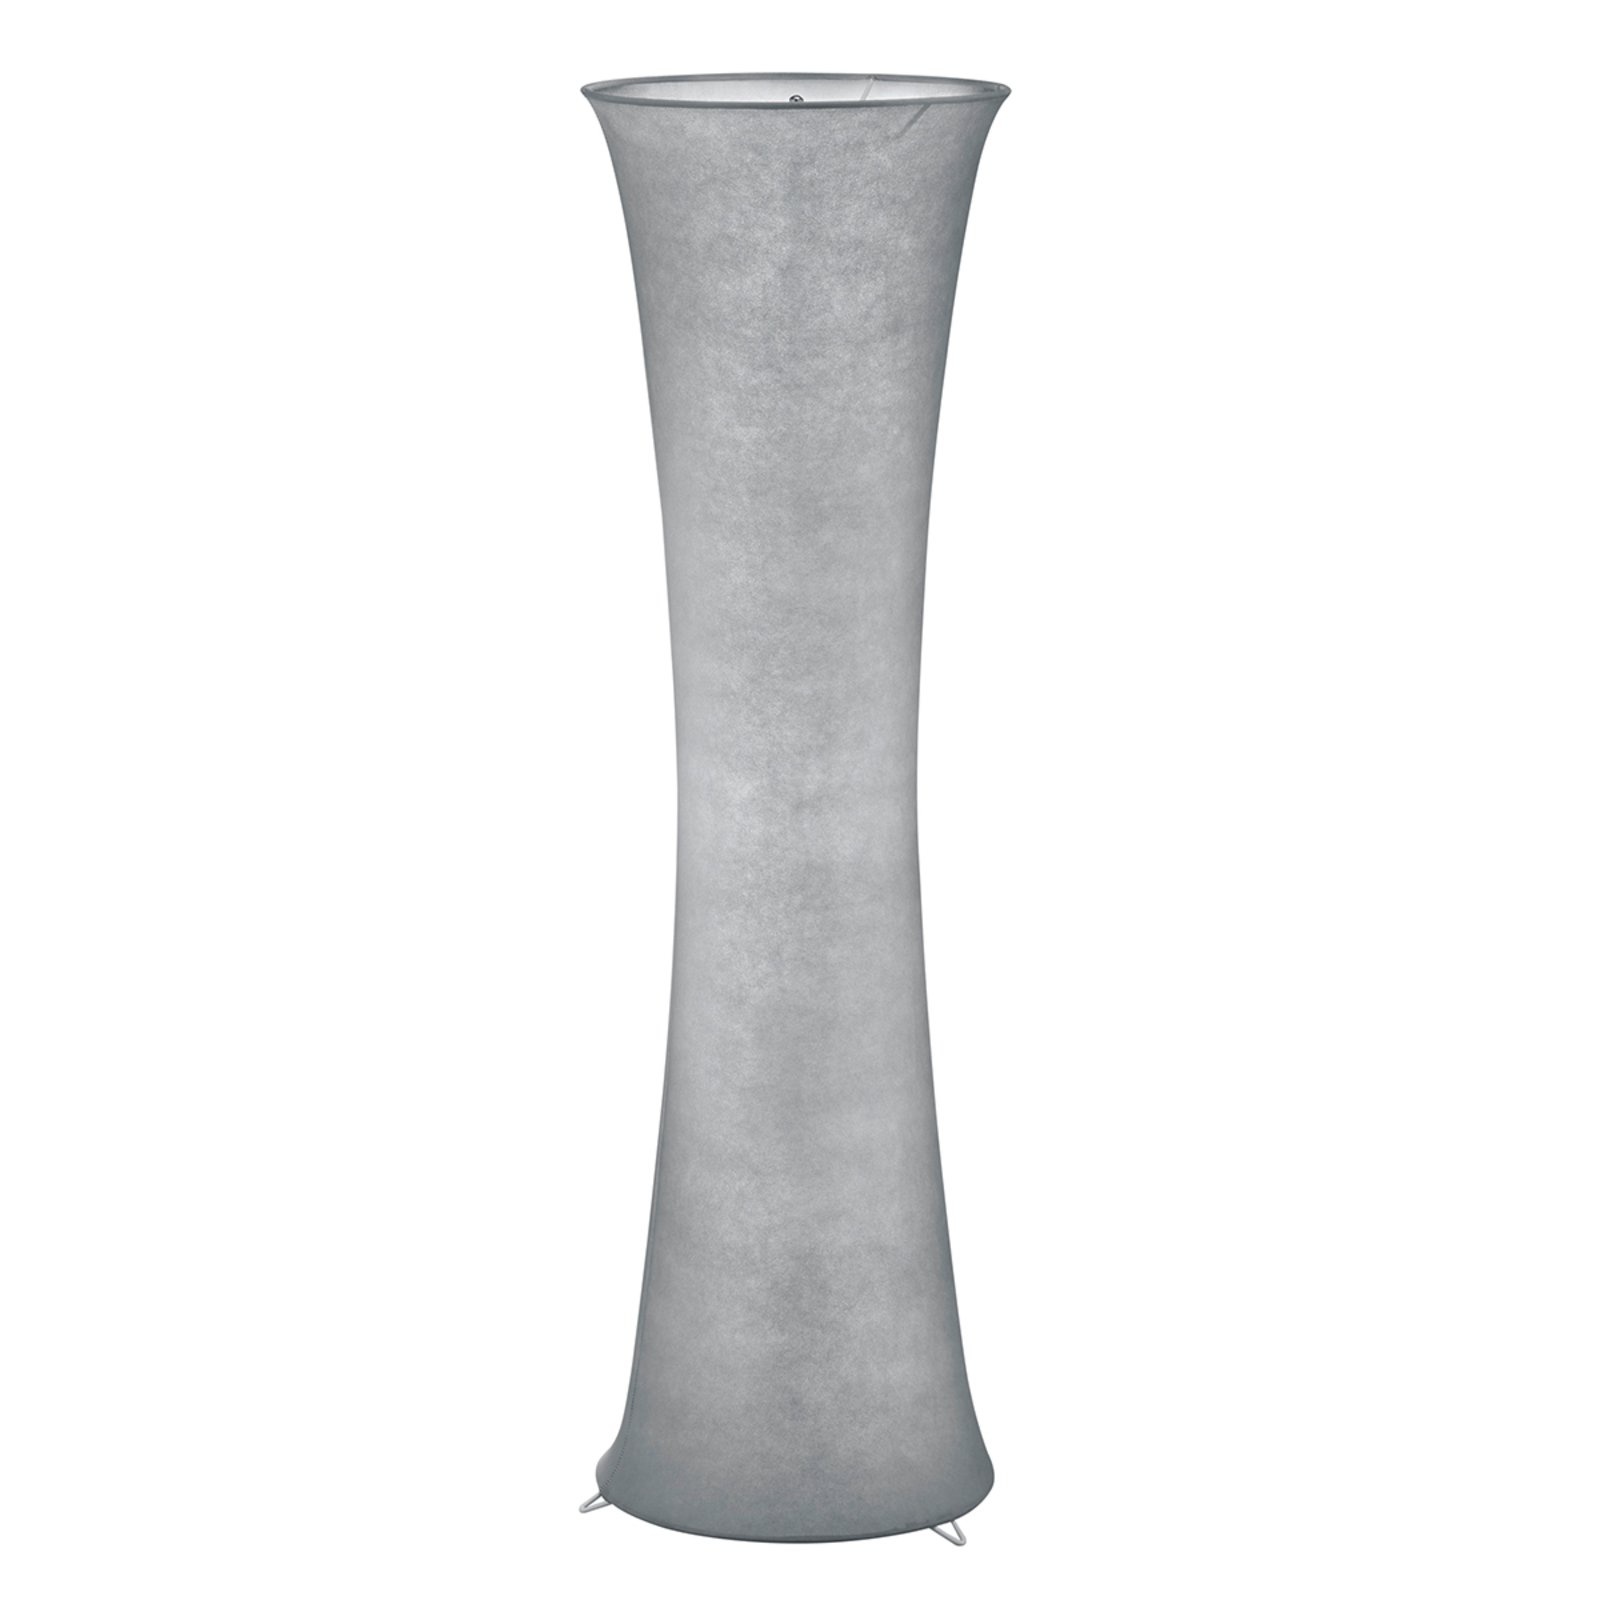 Atmosferična tekstilna talna svetilka Gravis v sivi barvi